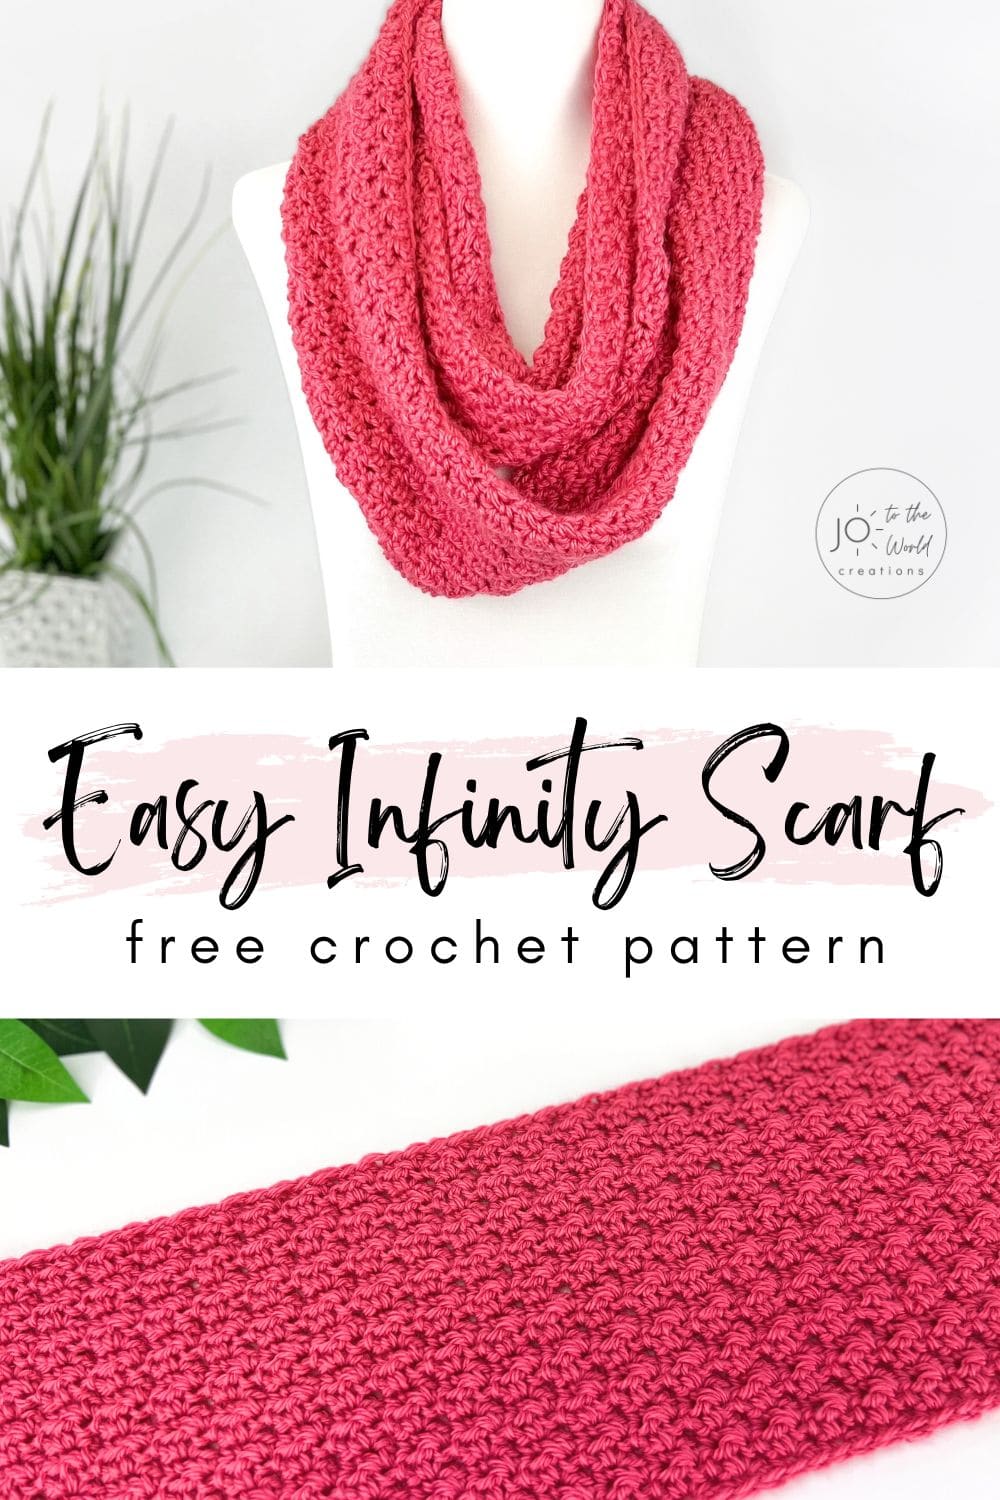 Crochet infinity scarf free pattern